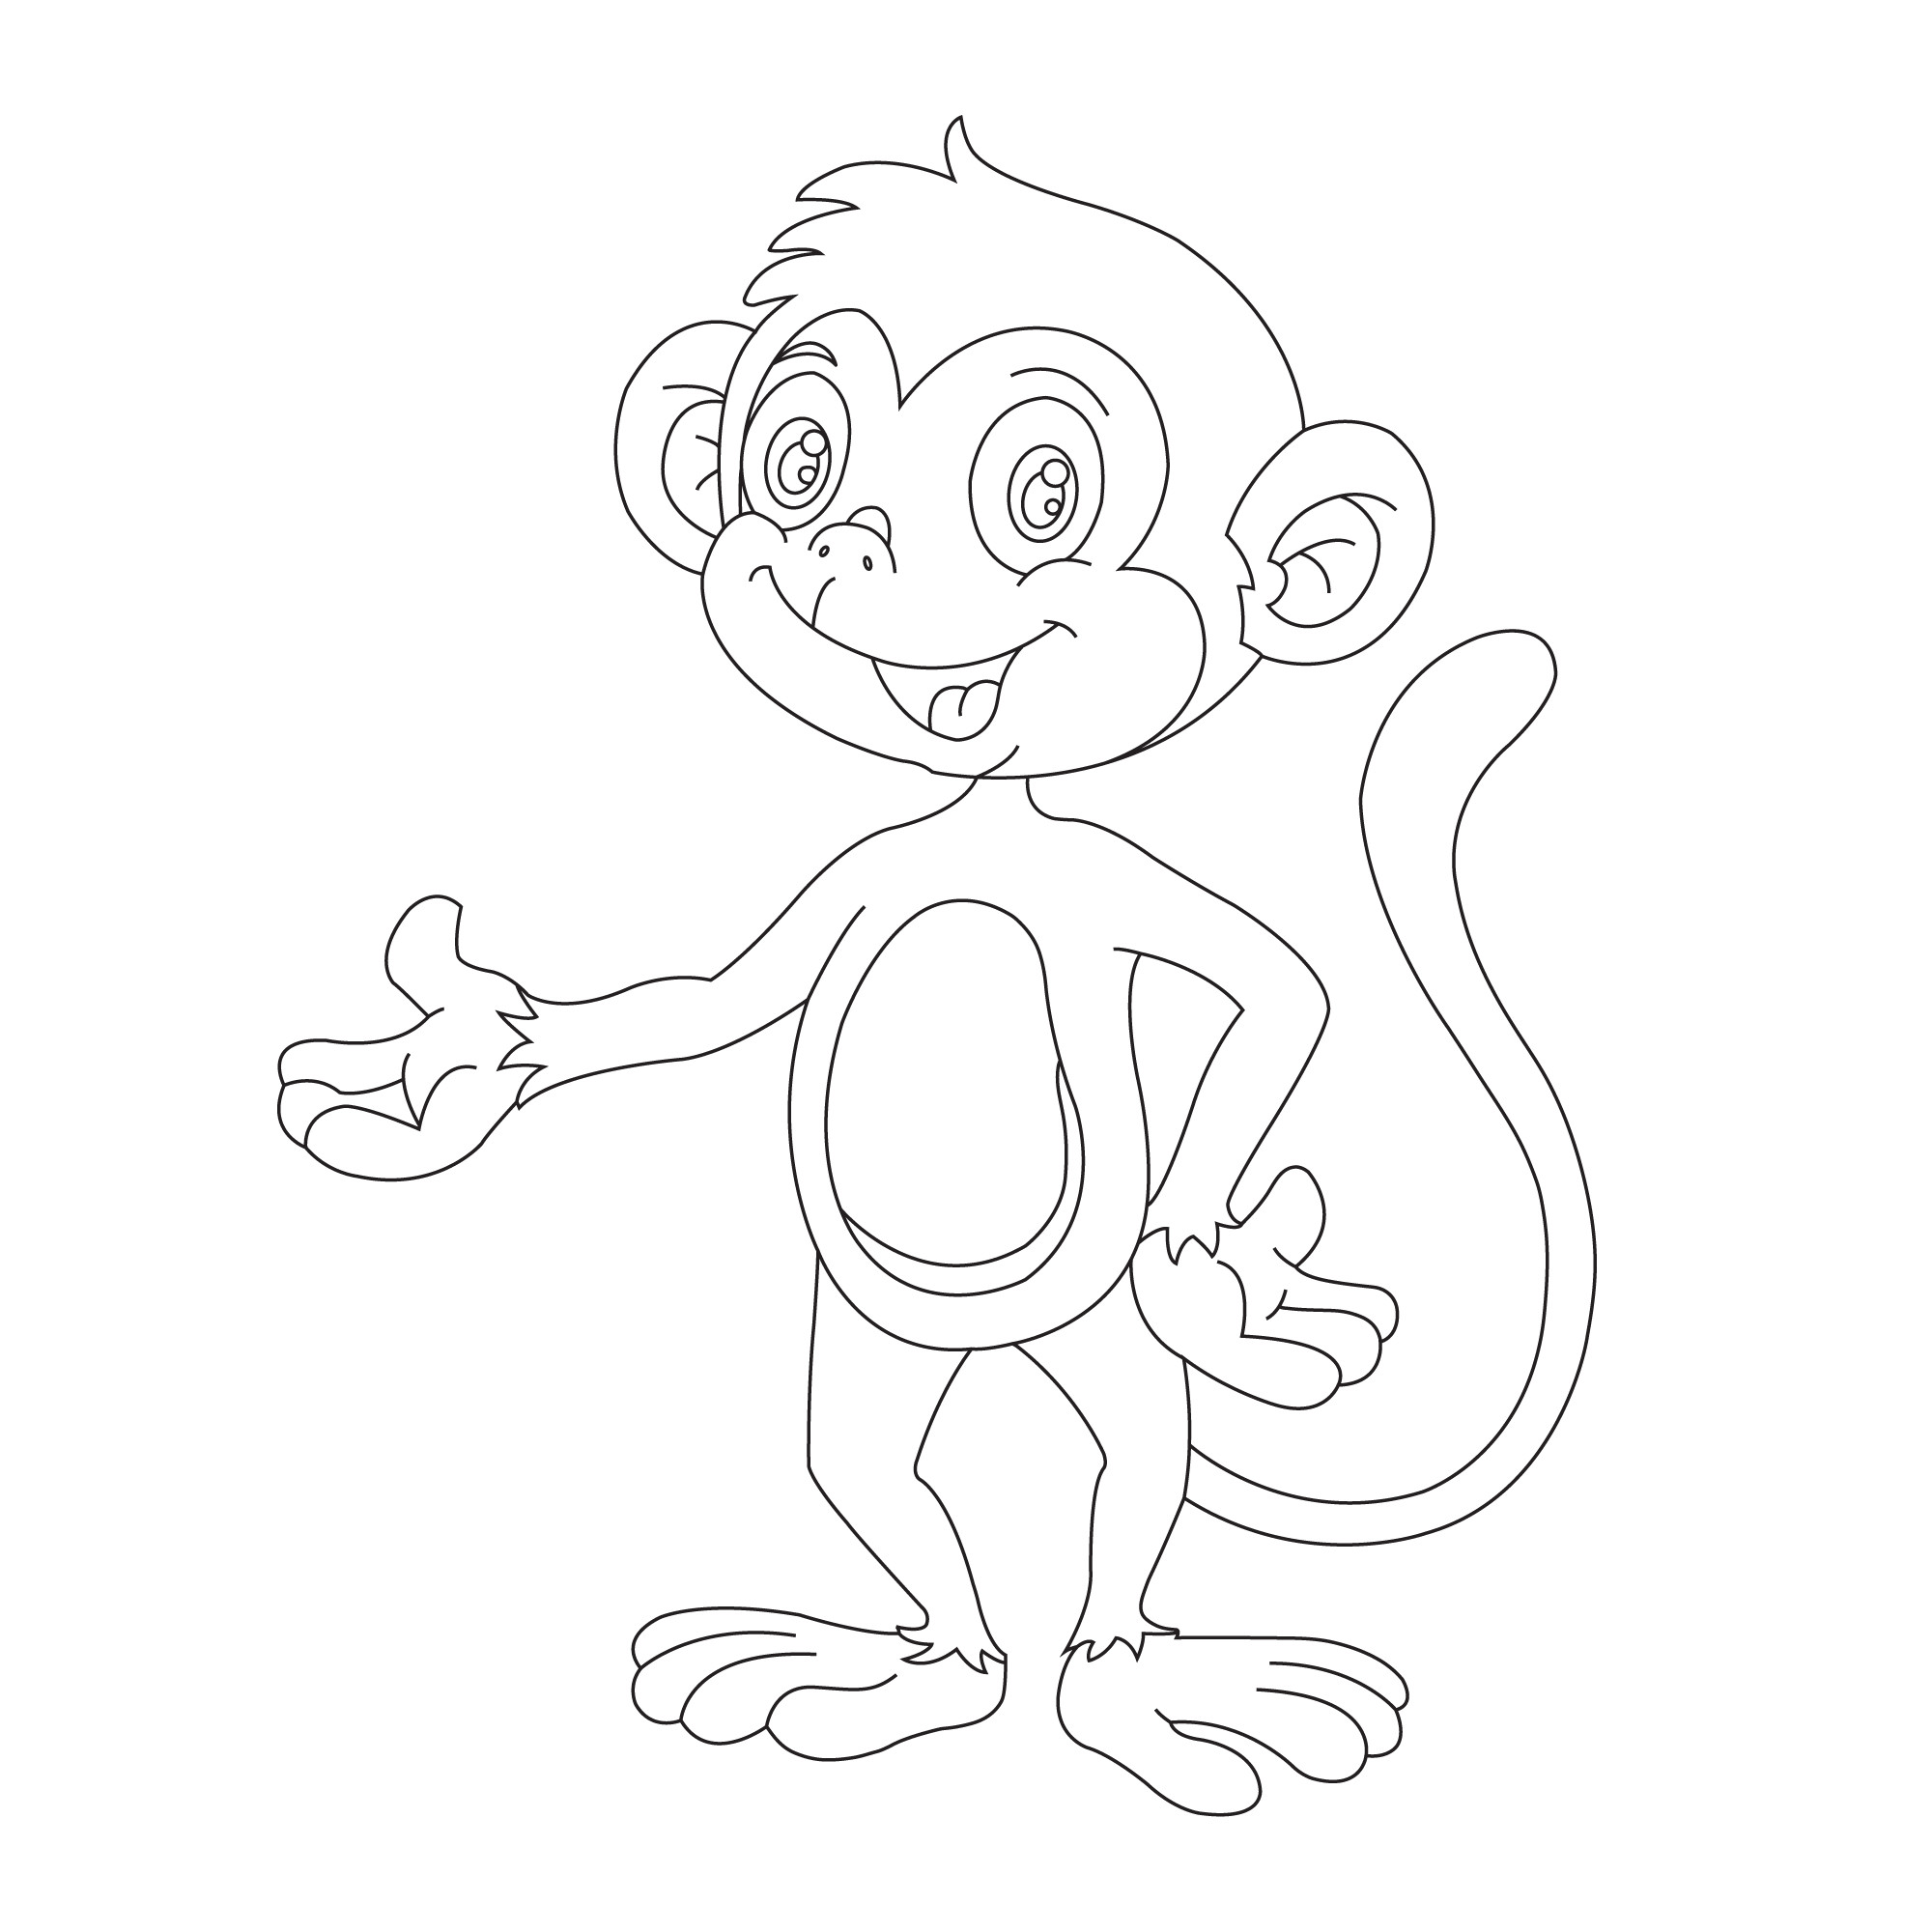 Раскраска для детей: мультяшная цирковая обезьяна